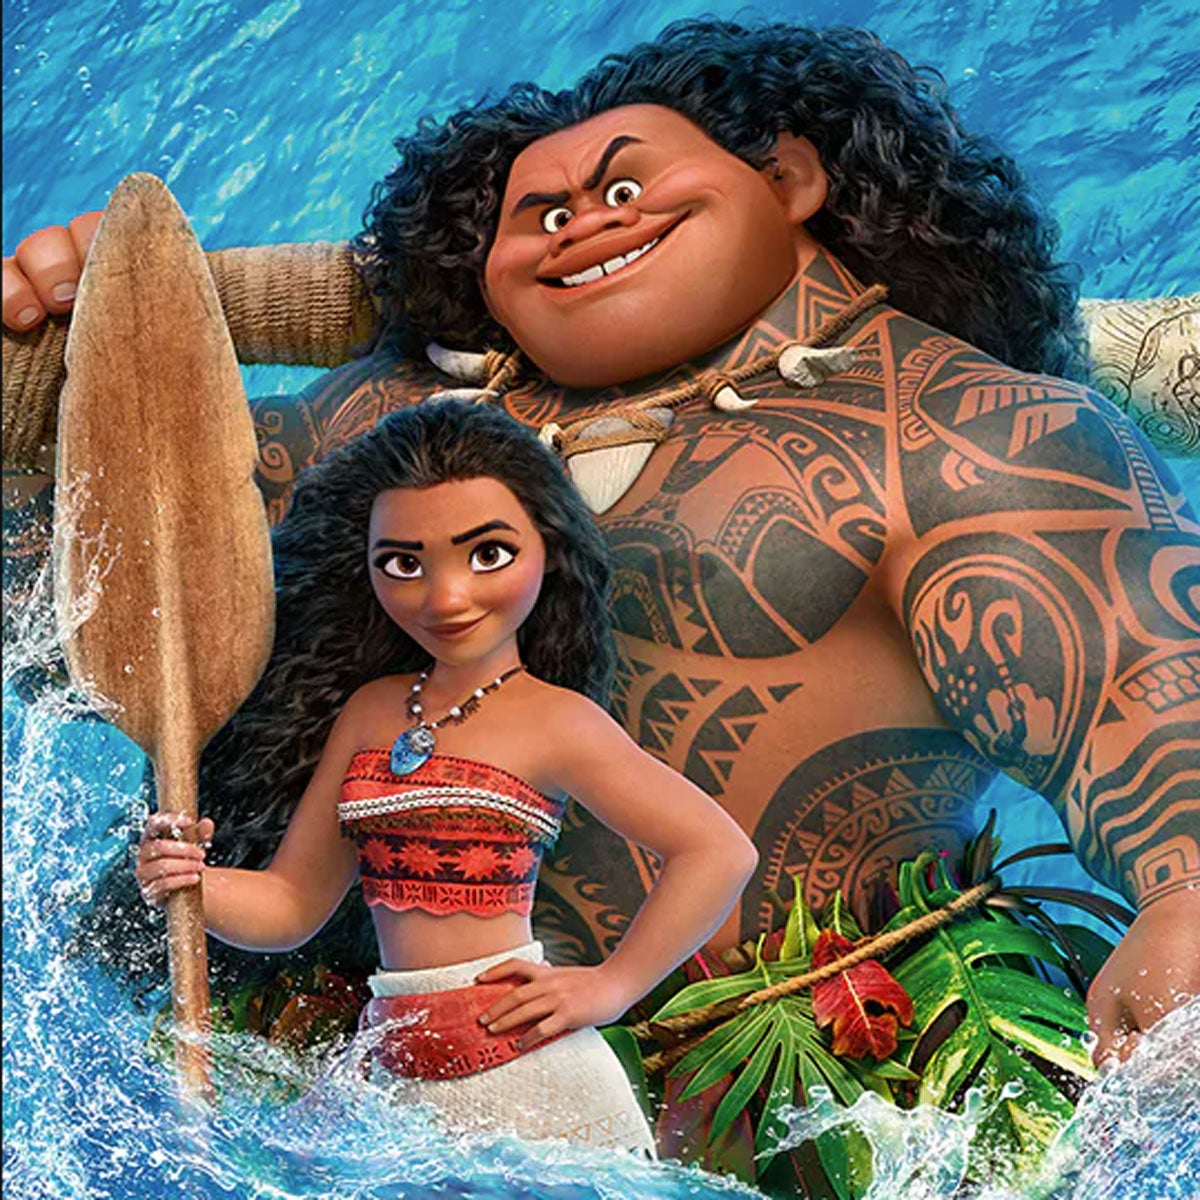 Moana and Maui from Disney's Moana